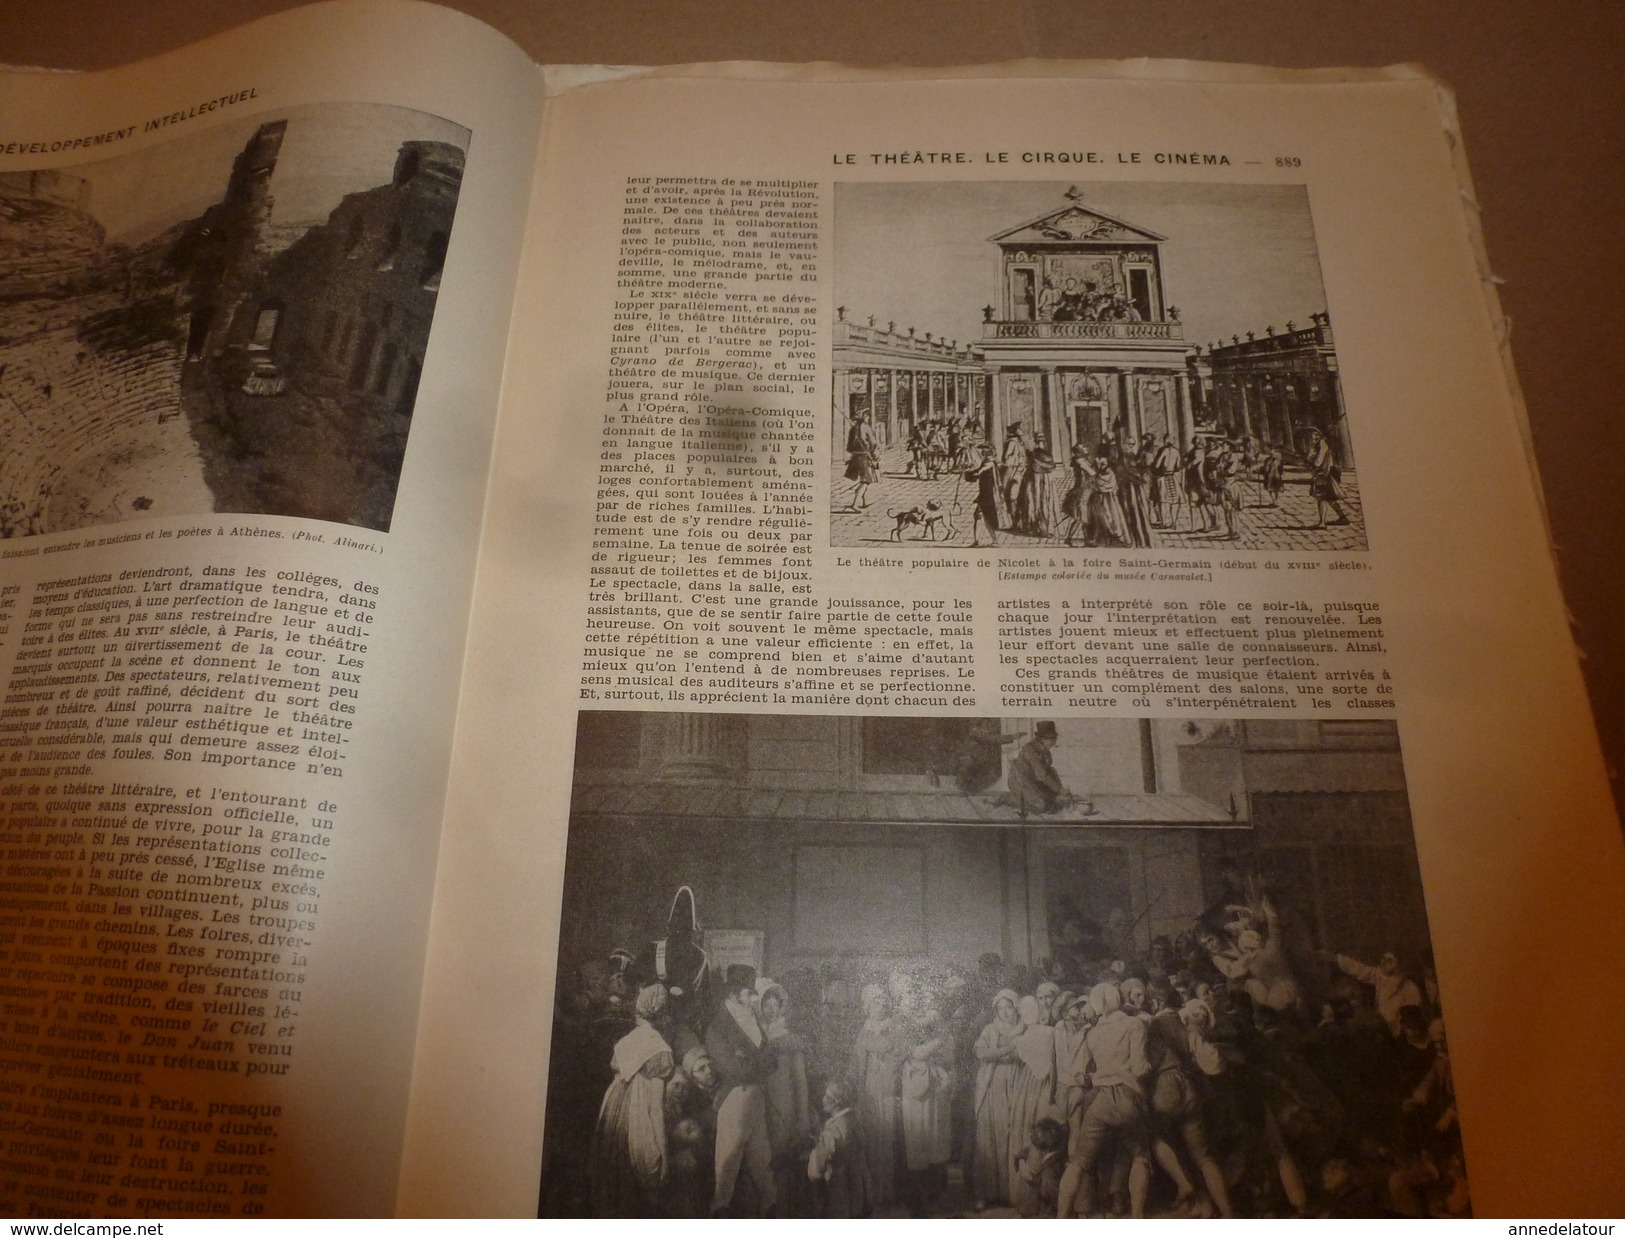 1950 ENCYCLOPEDIE FAMILIALE LAROUSSE ----->  La lecture,Les bibliothèques,Les musées,Le théâtre,Le cirque,Le cinéma